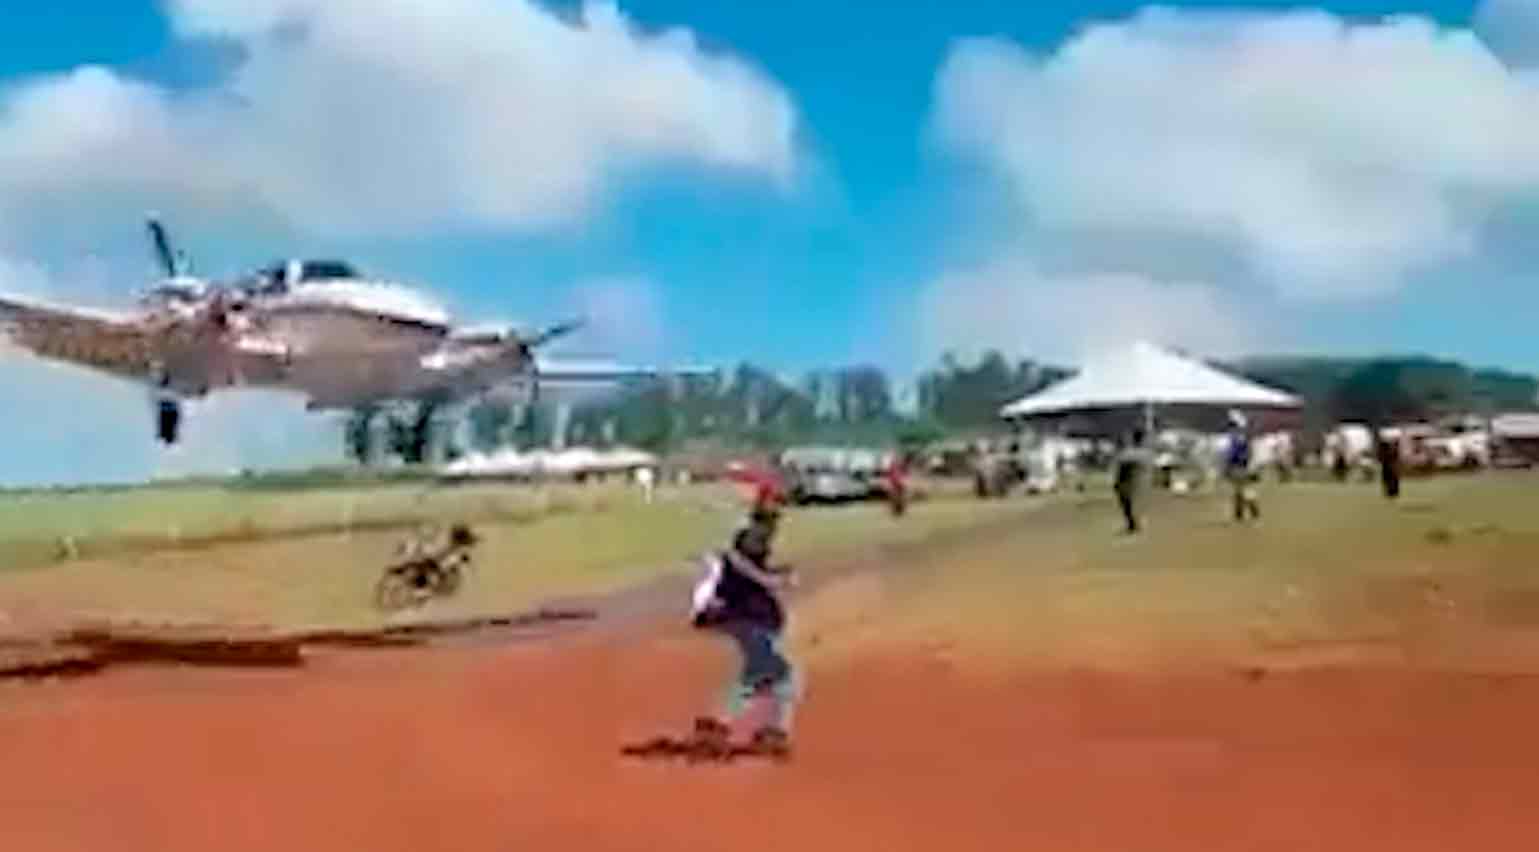 Vídeo mostra homem quase sendo atropelado por avião em pista da Agrishow. Foto: reprodução Twitter